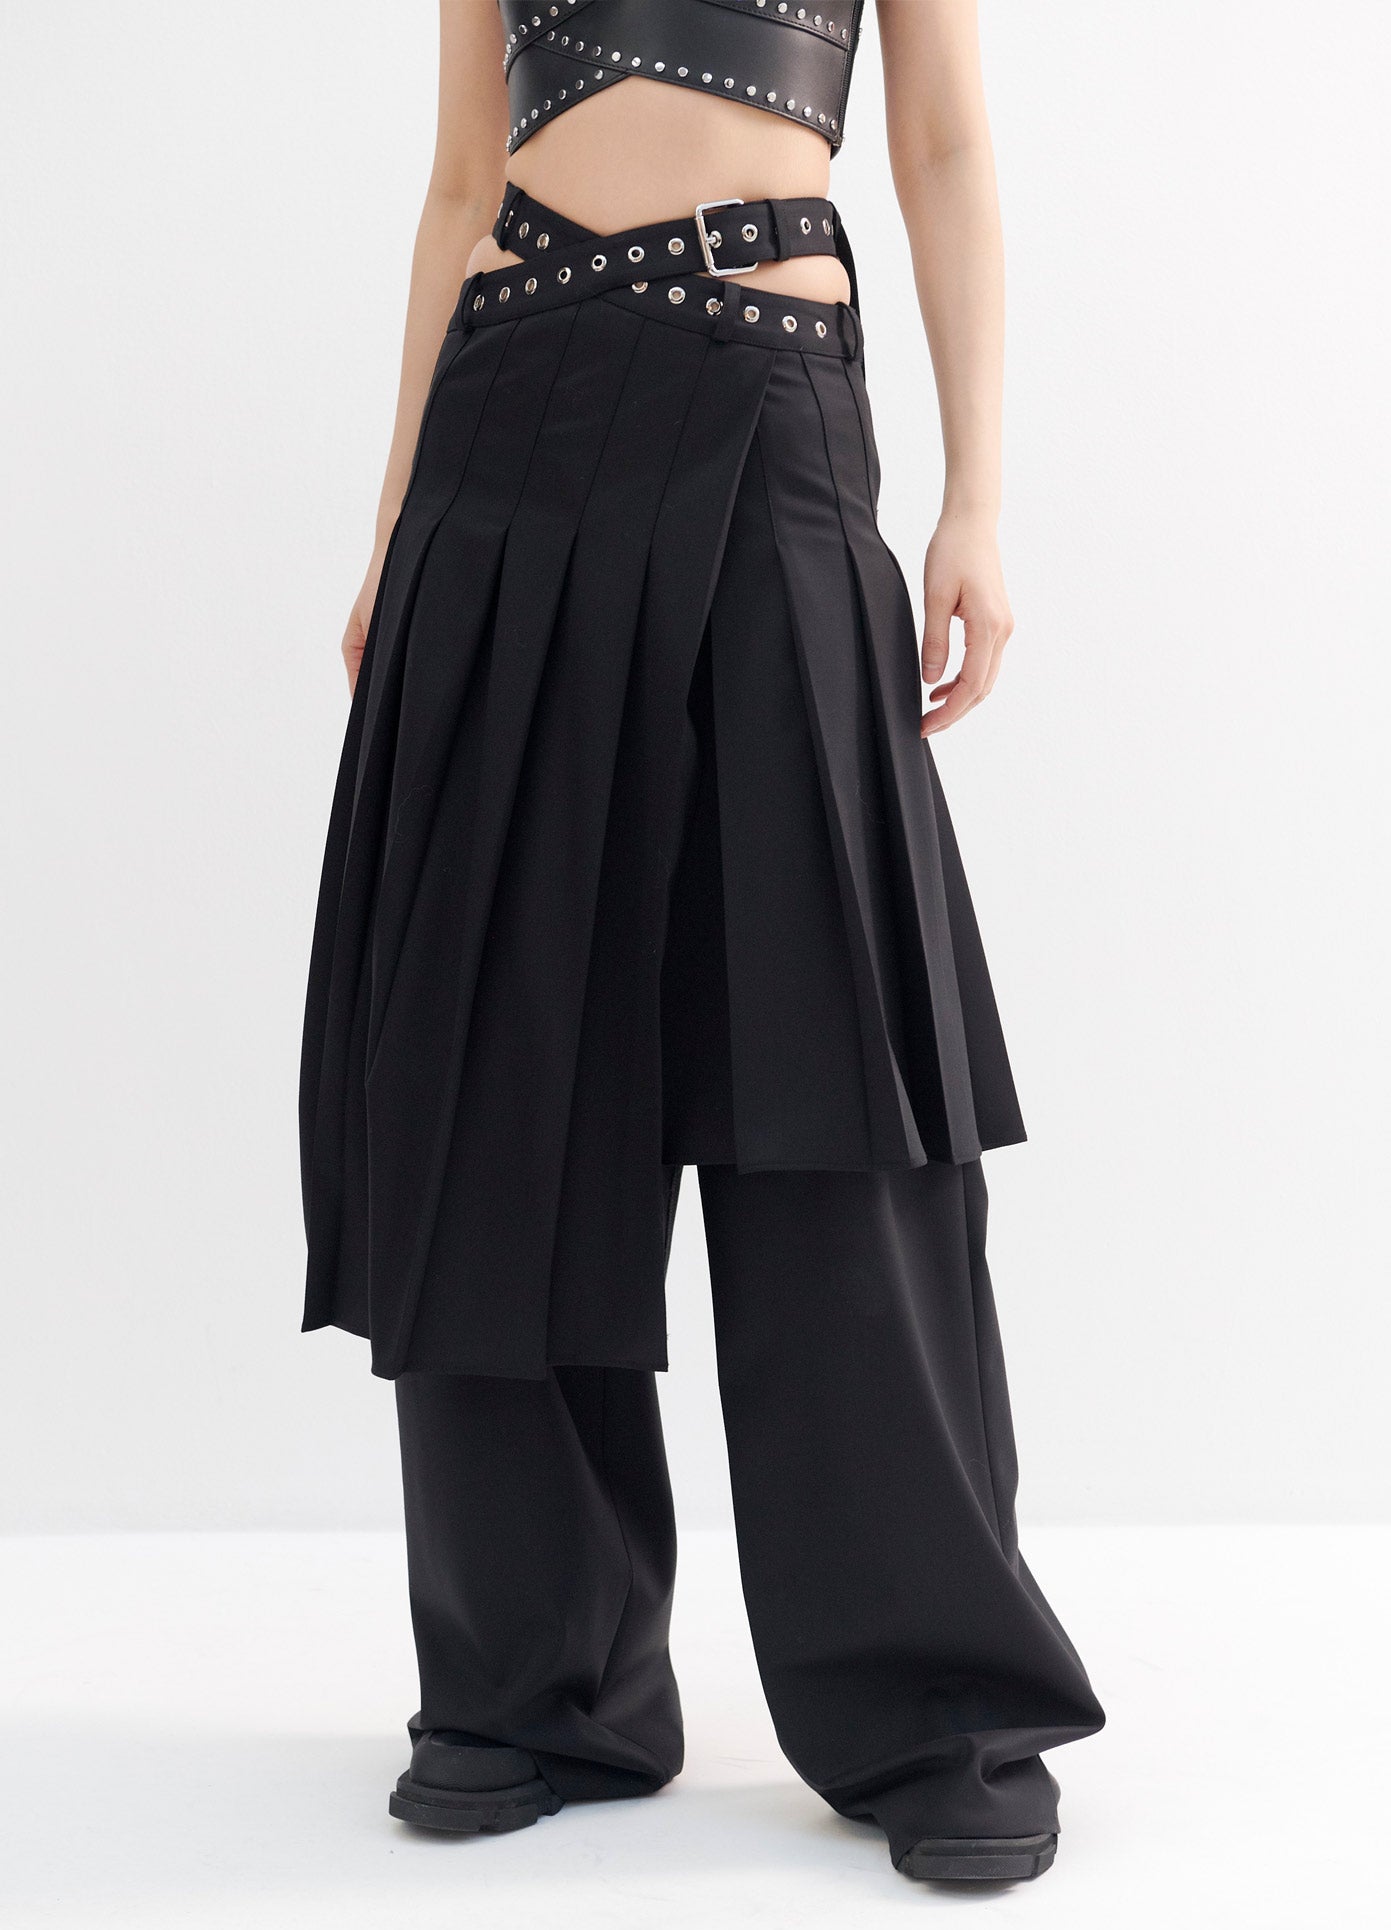 MONSE Pleated Criss Cross Waist Trouser Skirt in Black on Model Full View